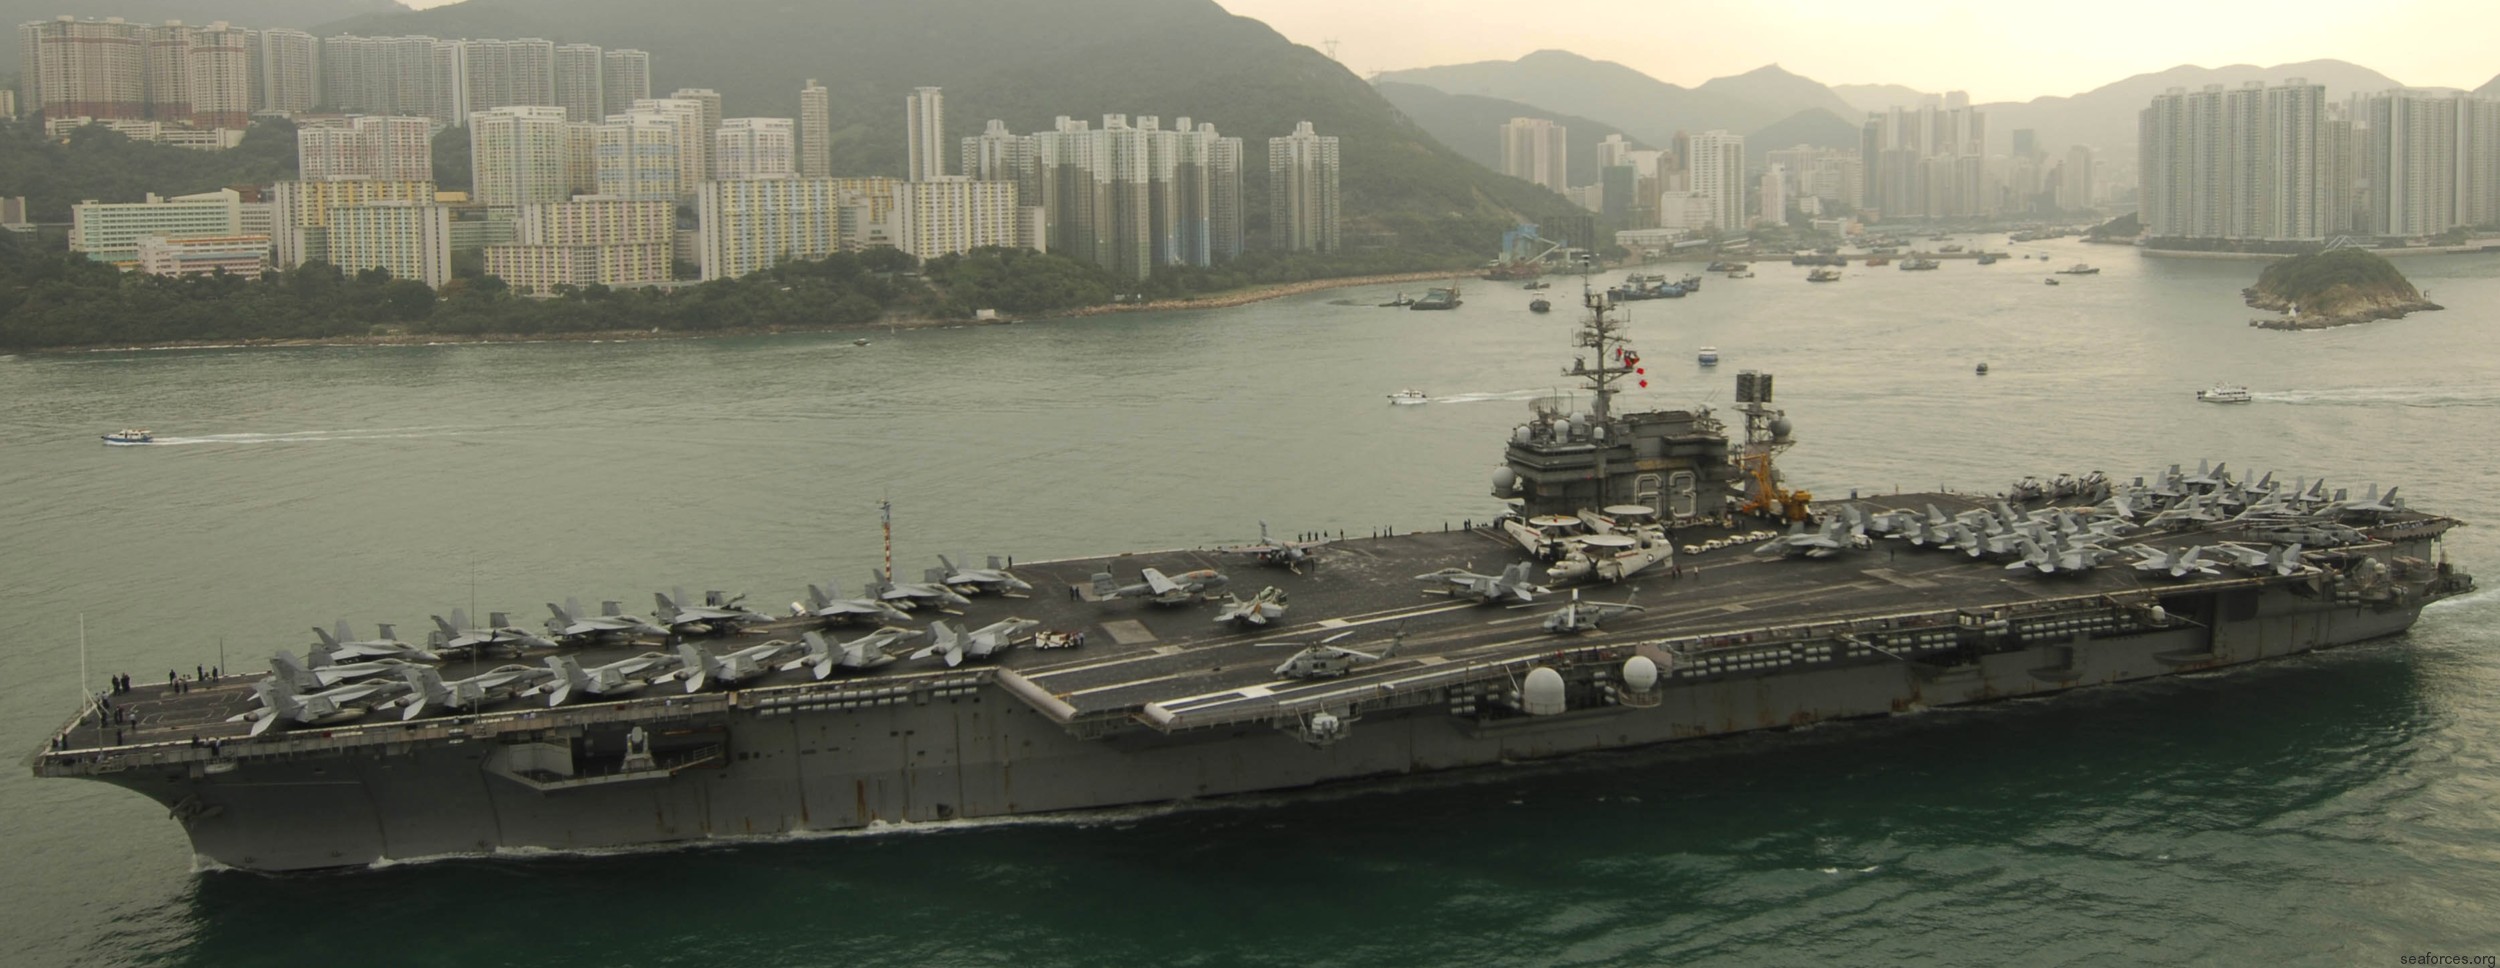 cv-63 uss kitty hawk aircraft carrier air wing cvw-5 us navy 115 hong kong